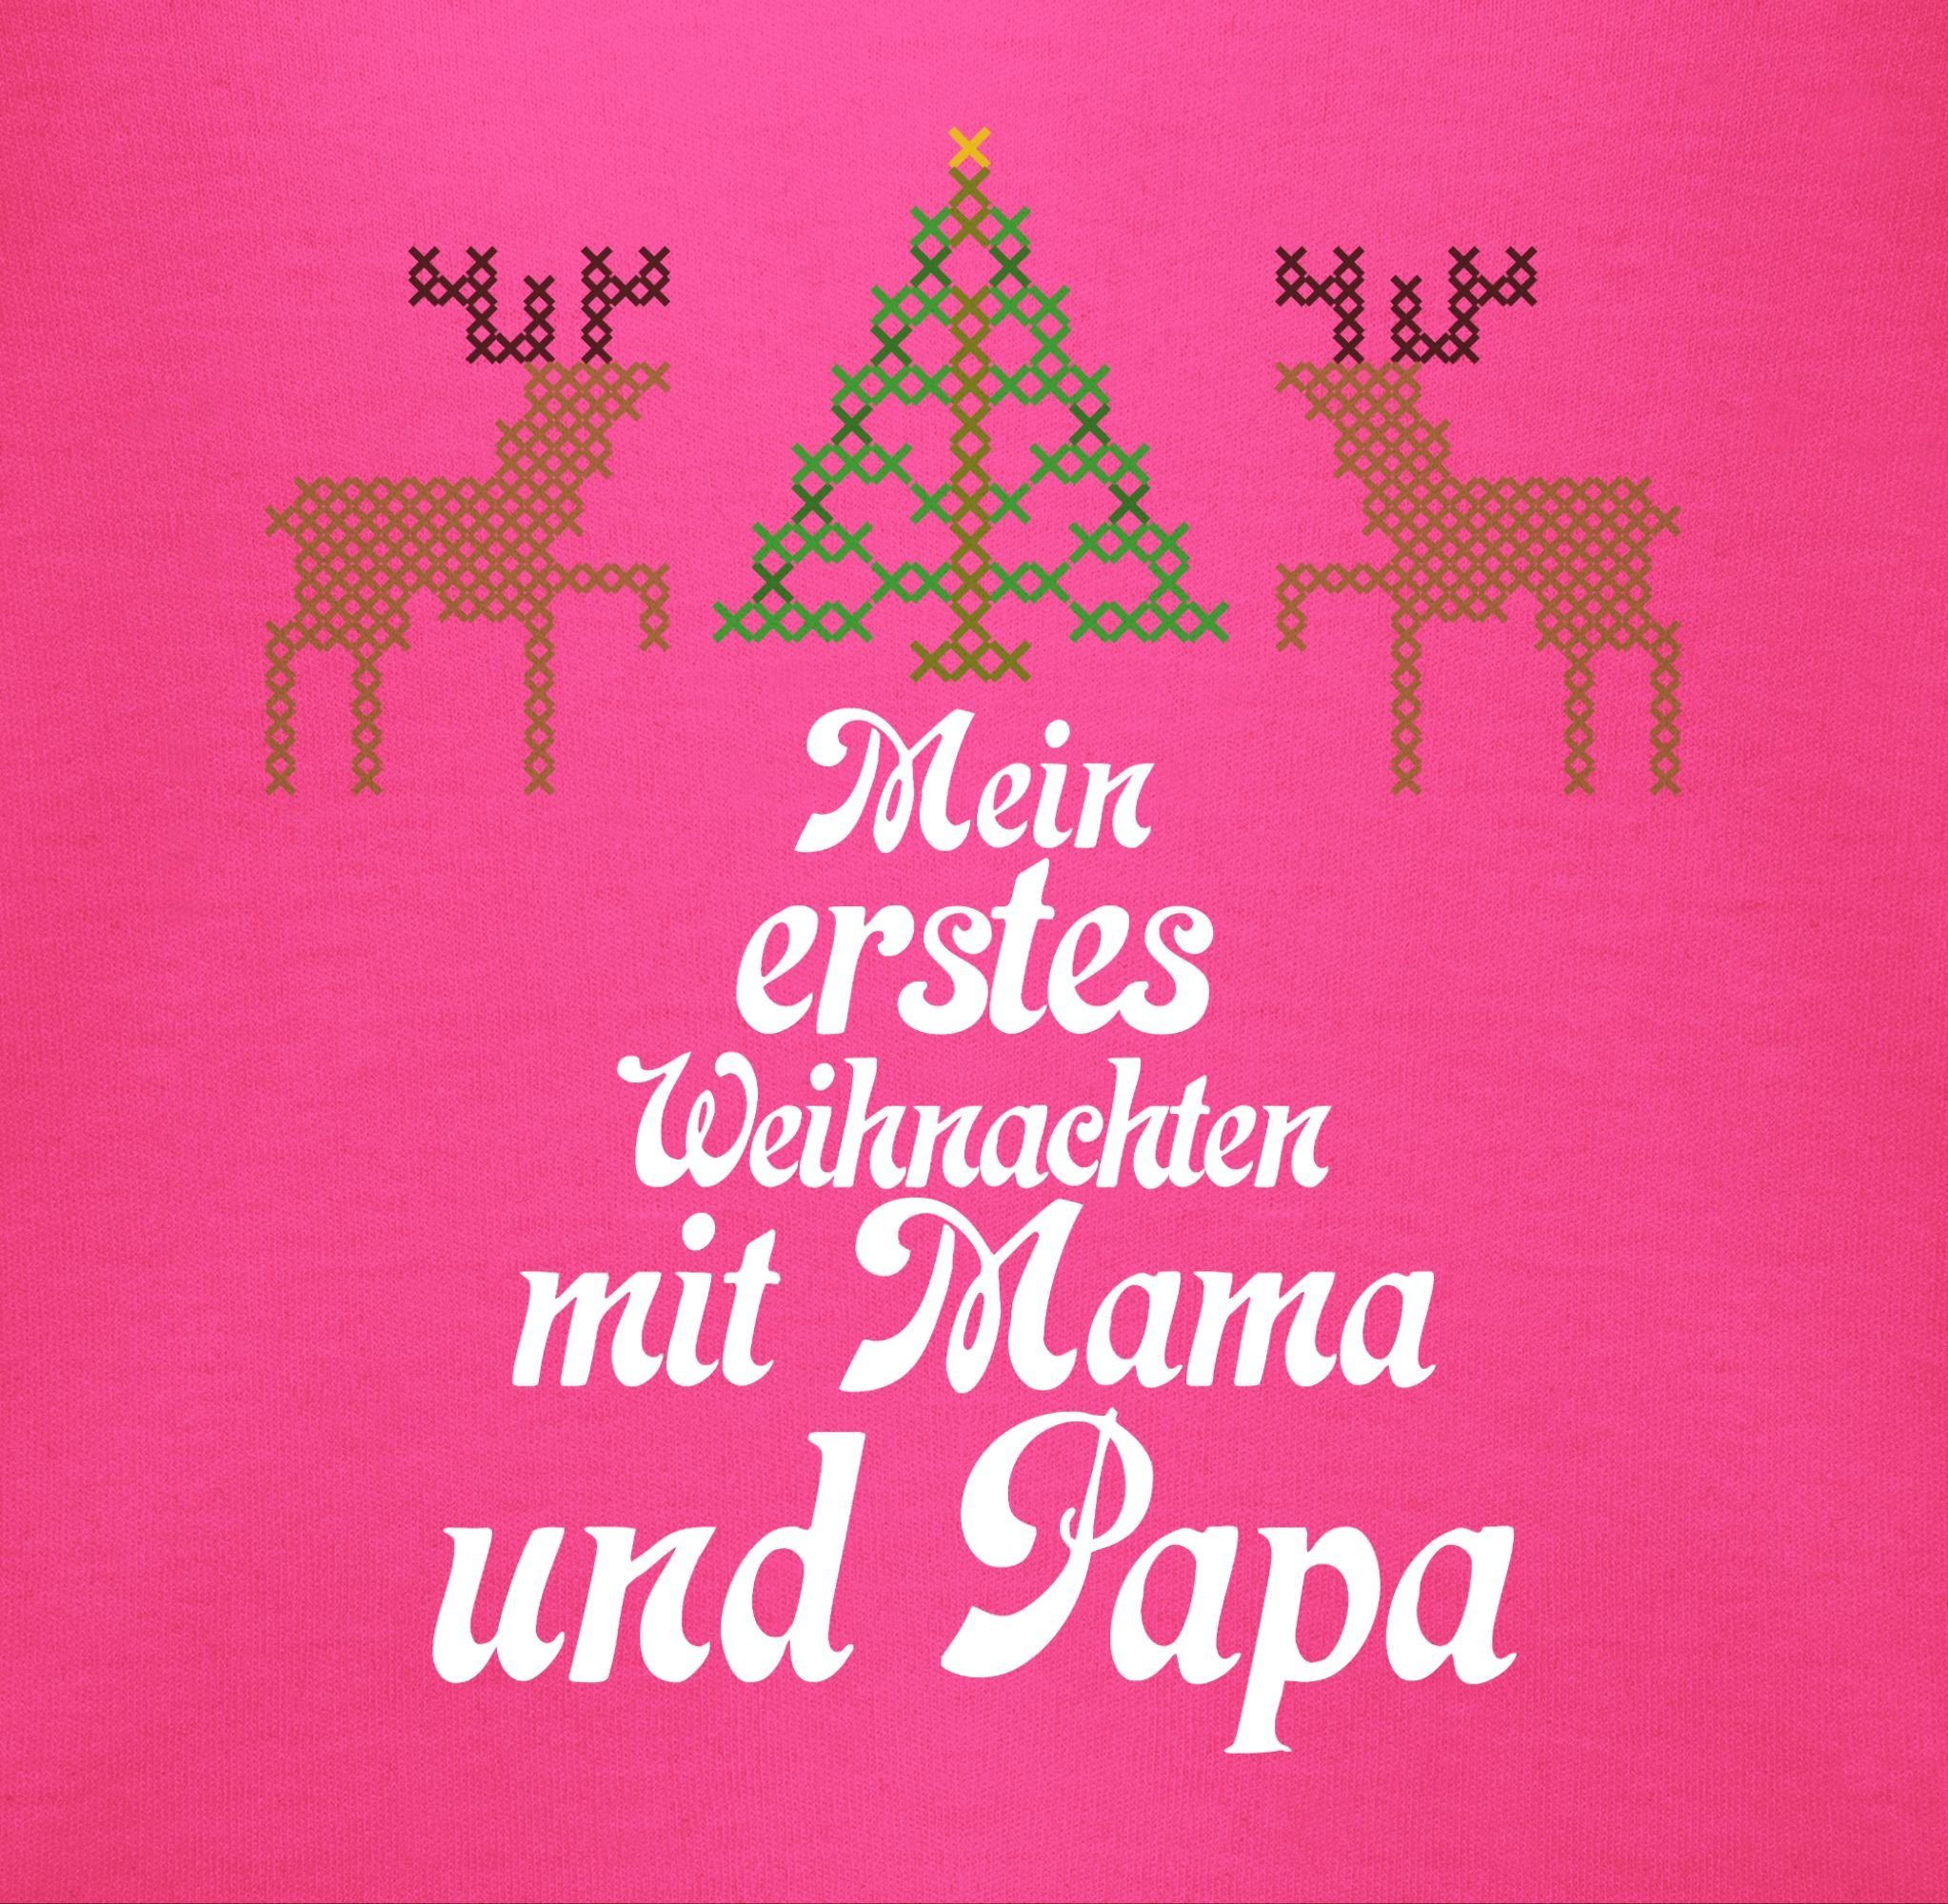 Weihnachten sweater Rentiere erstes Ugly Fuchsia Shirtbody Baby Mein Shirtracer - Kleidung 2 - Weihnachten